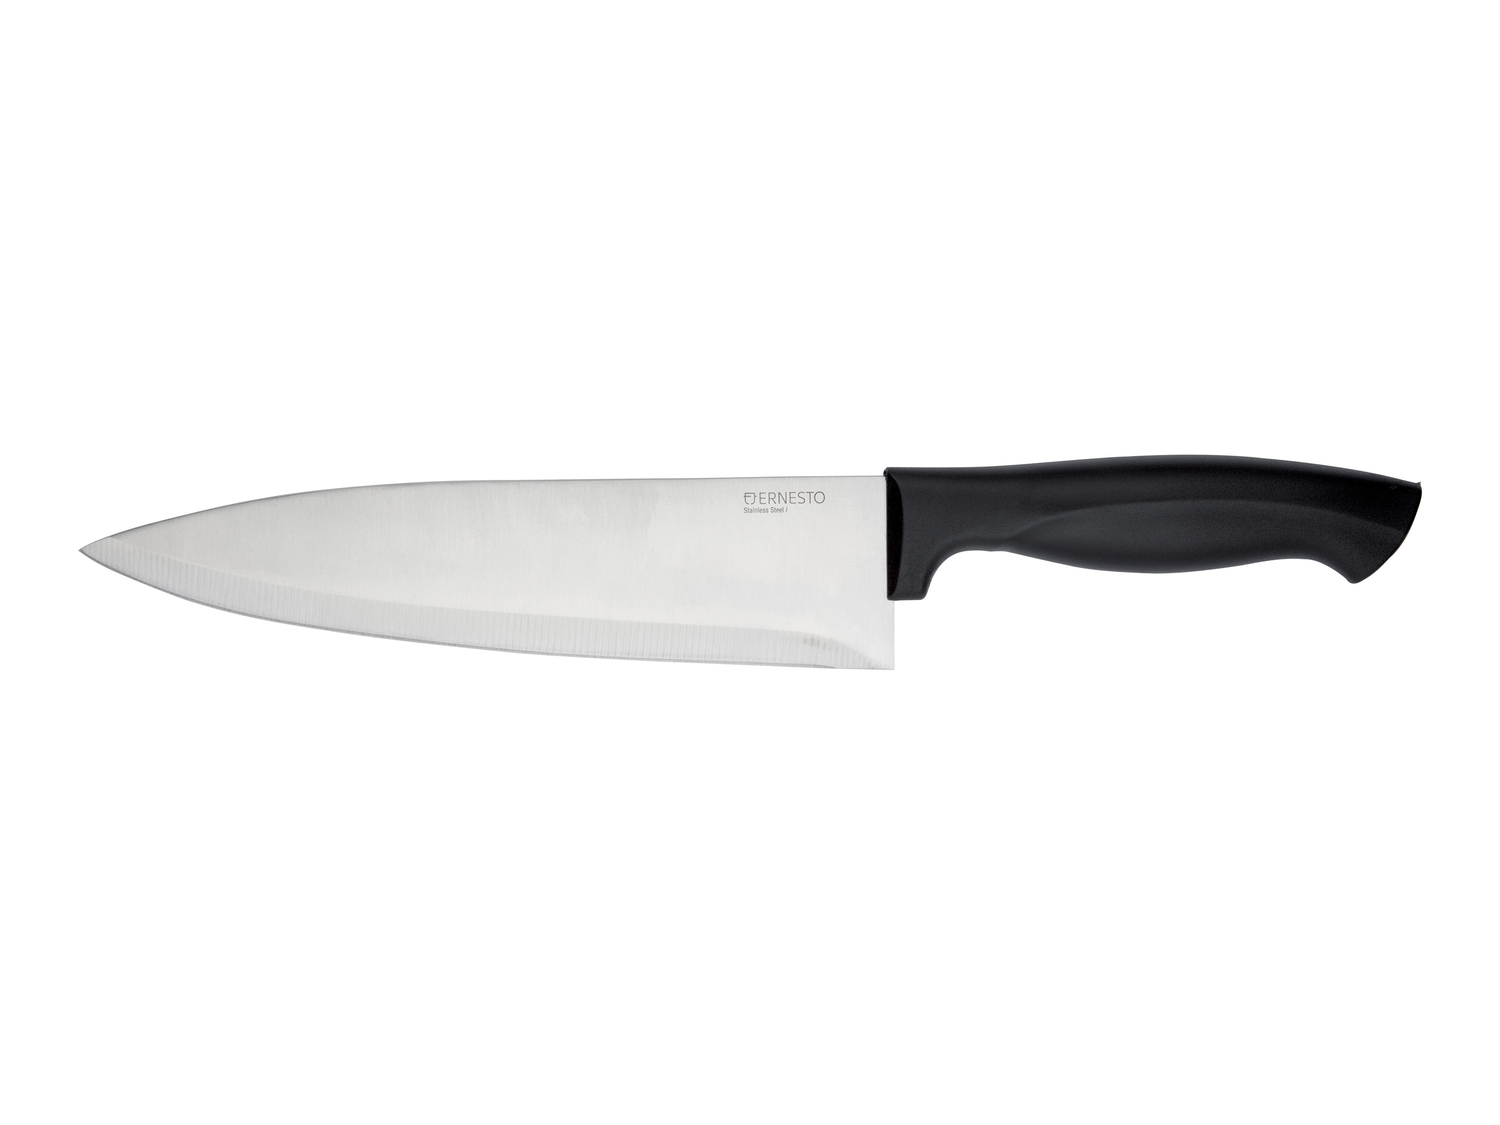 Coltello o set coltelli da cucina Ernesto, prezzo 1.99 &#8364; 

Caratteristiche

- ...